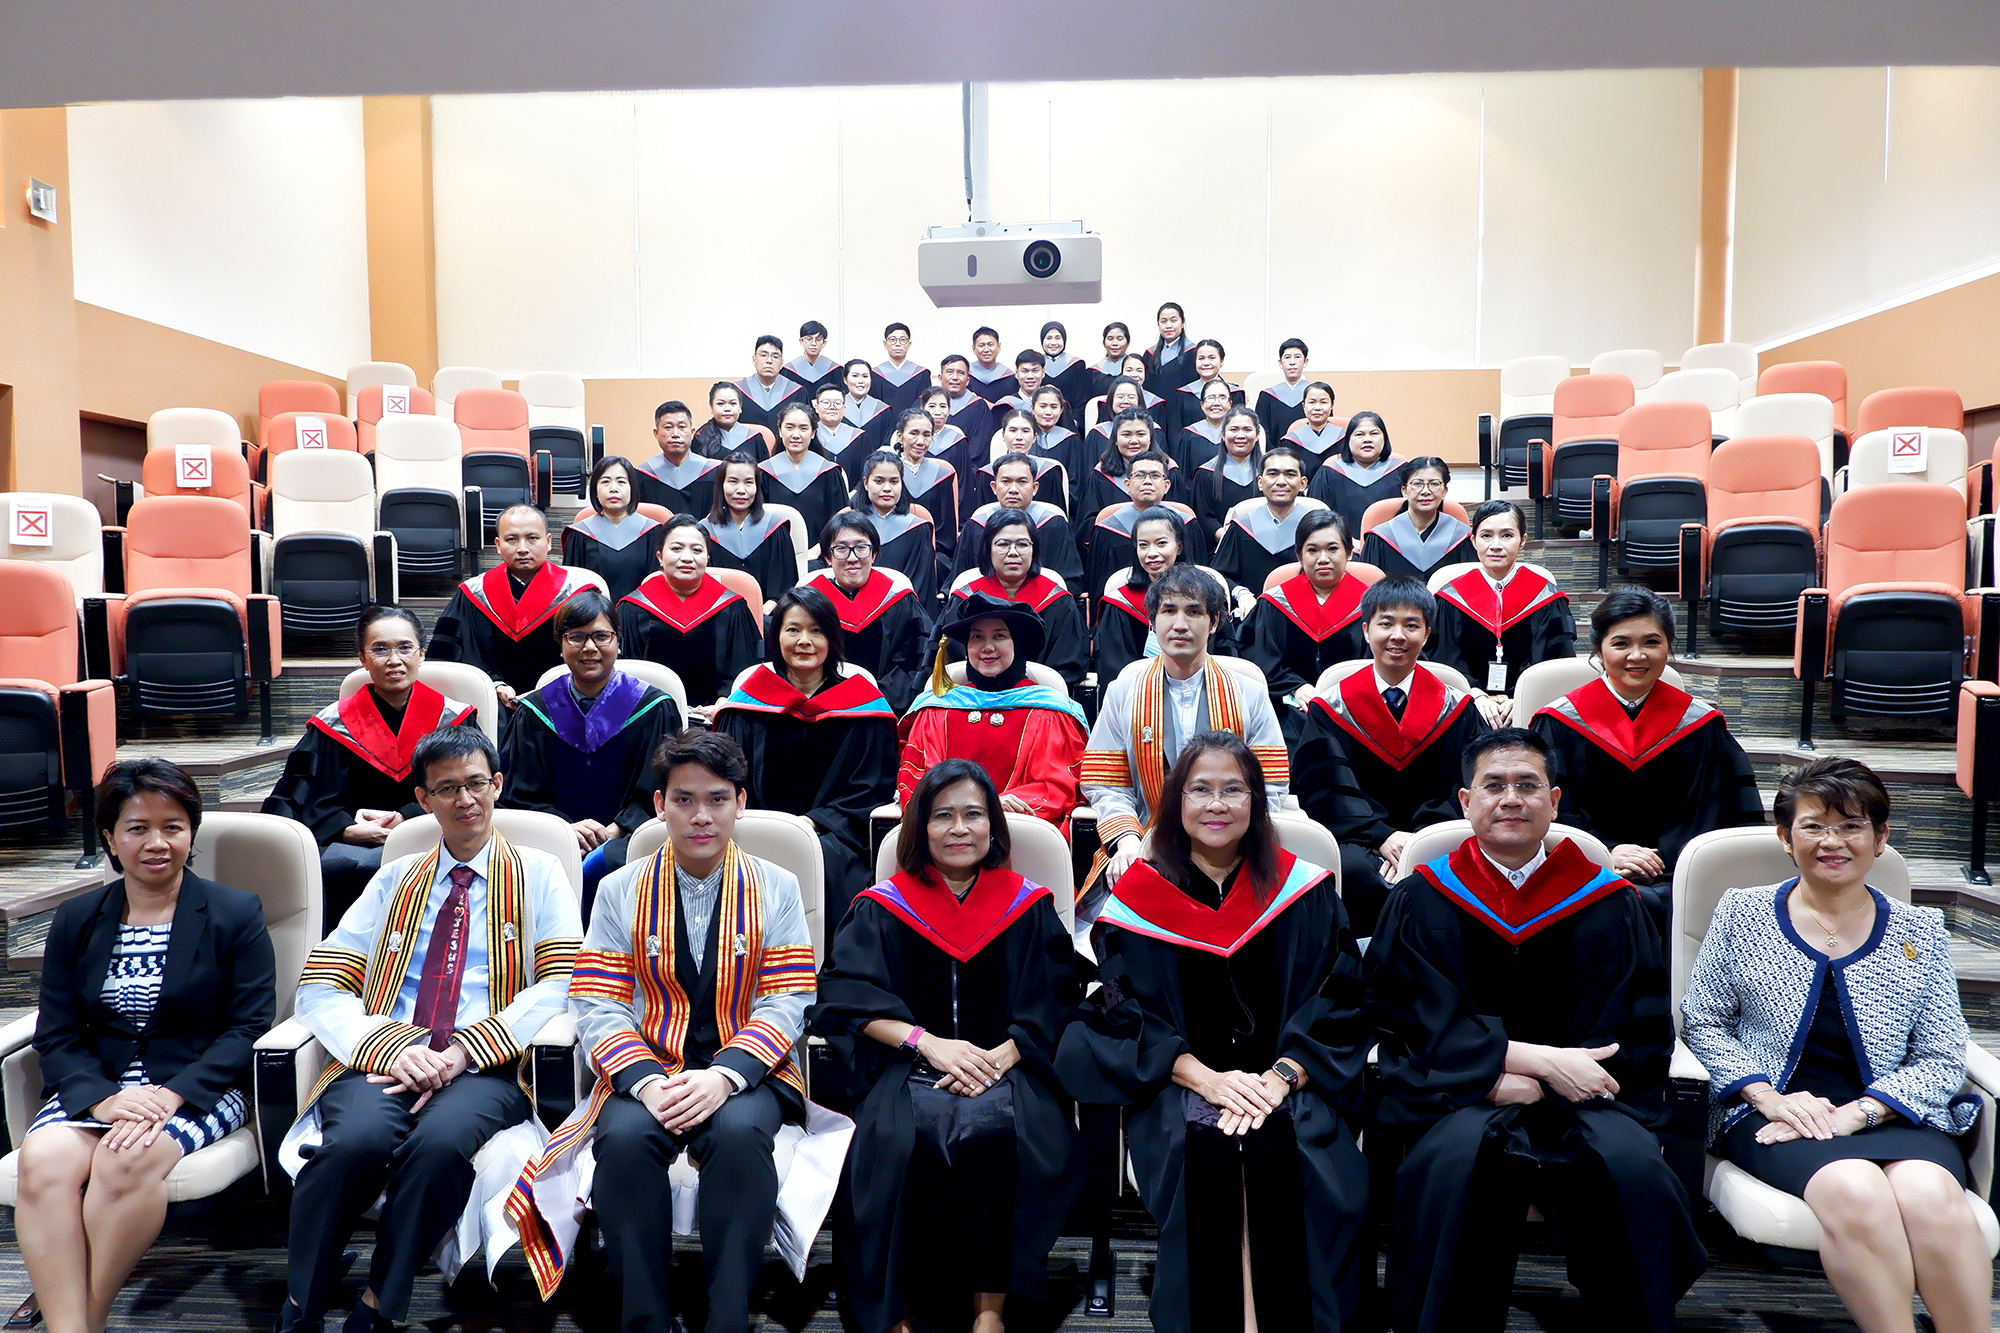 บัณฑิตวิทยาลัย แสดงความยินดี กับมหาบัณฑิตและดุษฎีบัณฑิต สาขาพหุวิทยาการ/สหวิทยาการ บัณฑิตวิทยาลัย